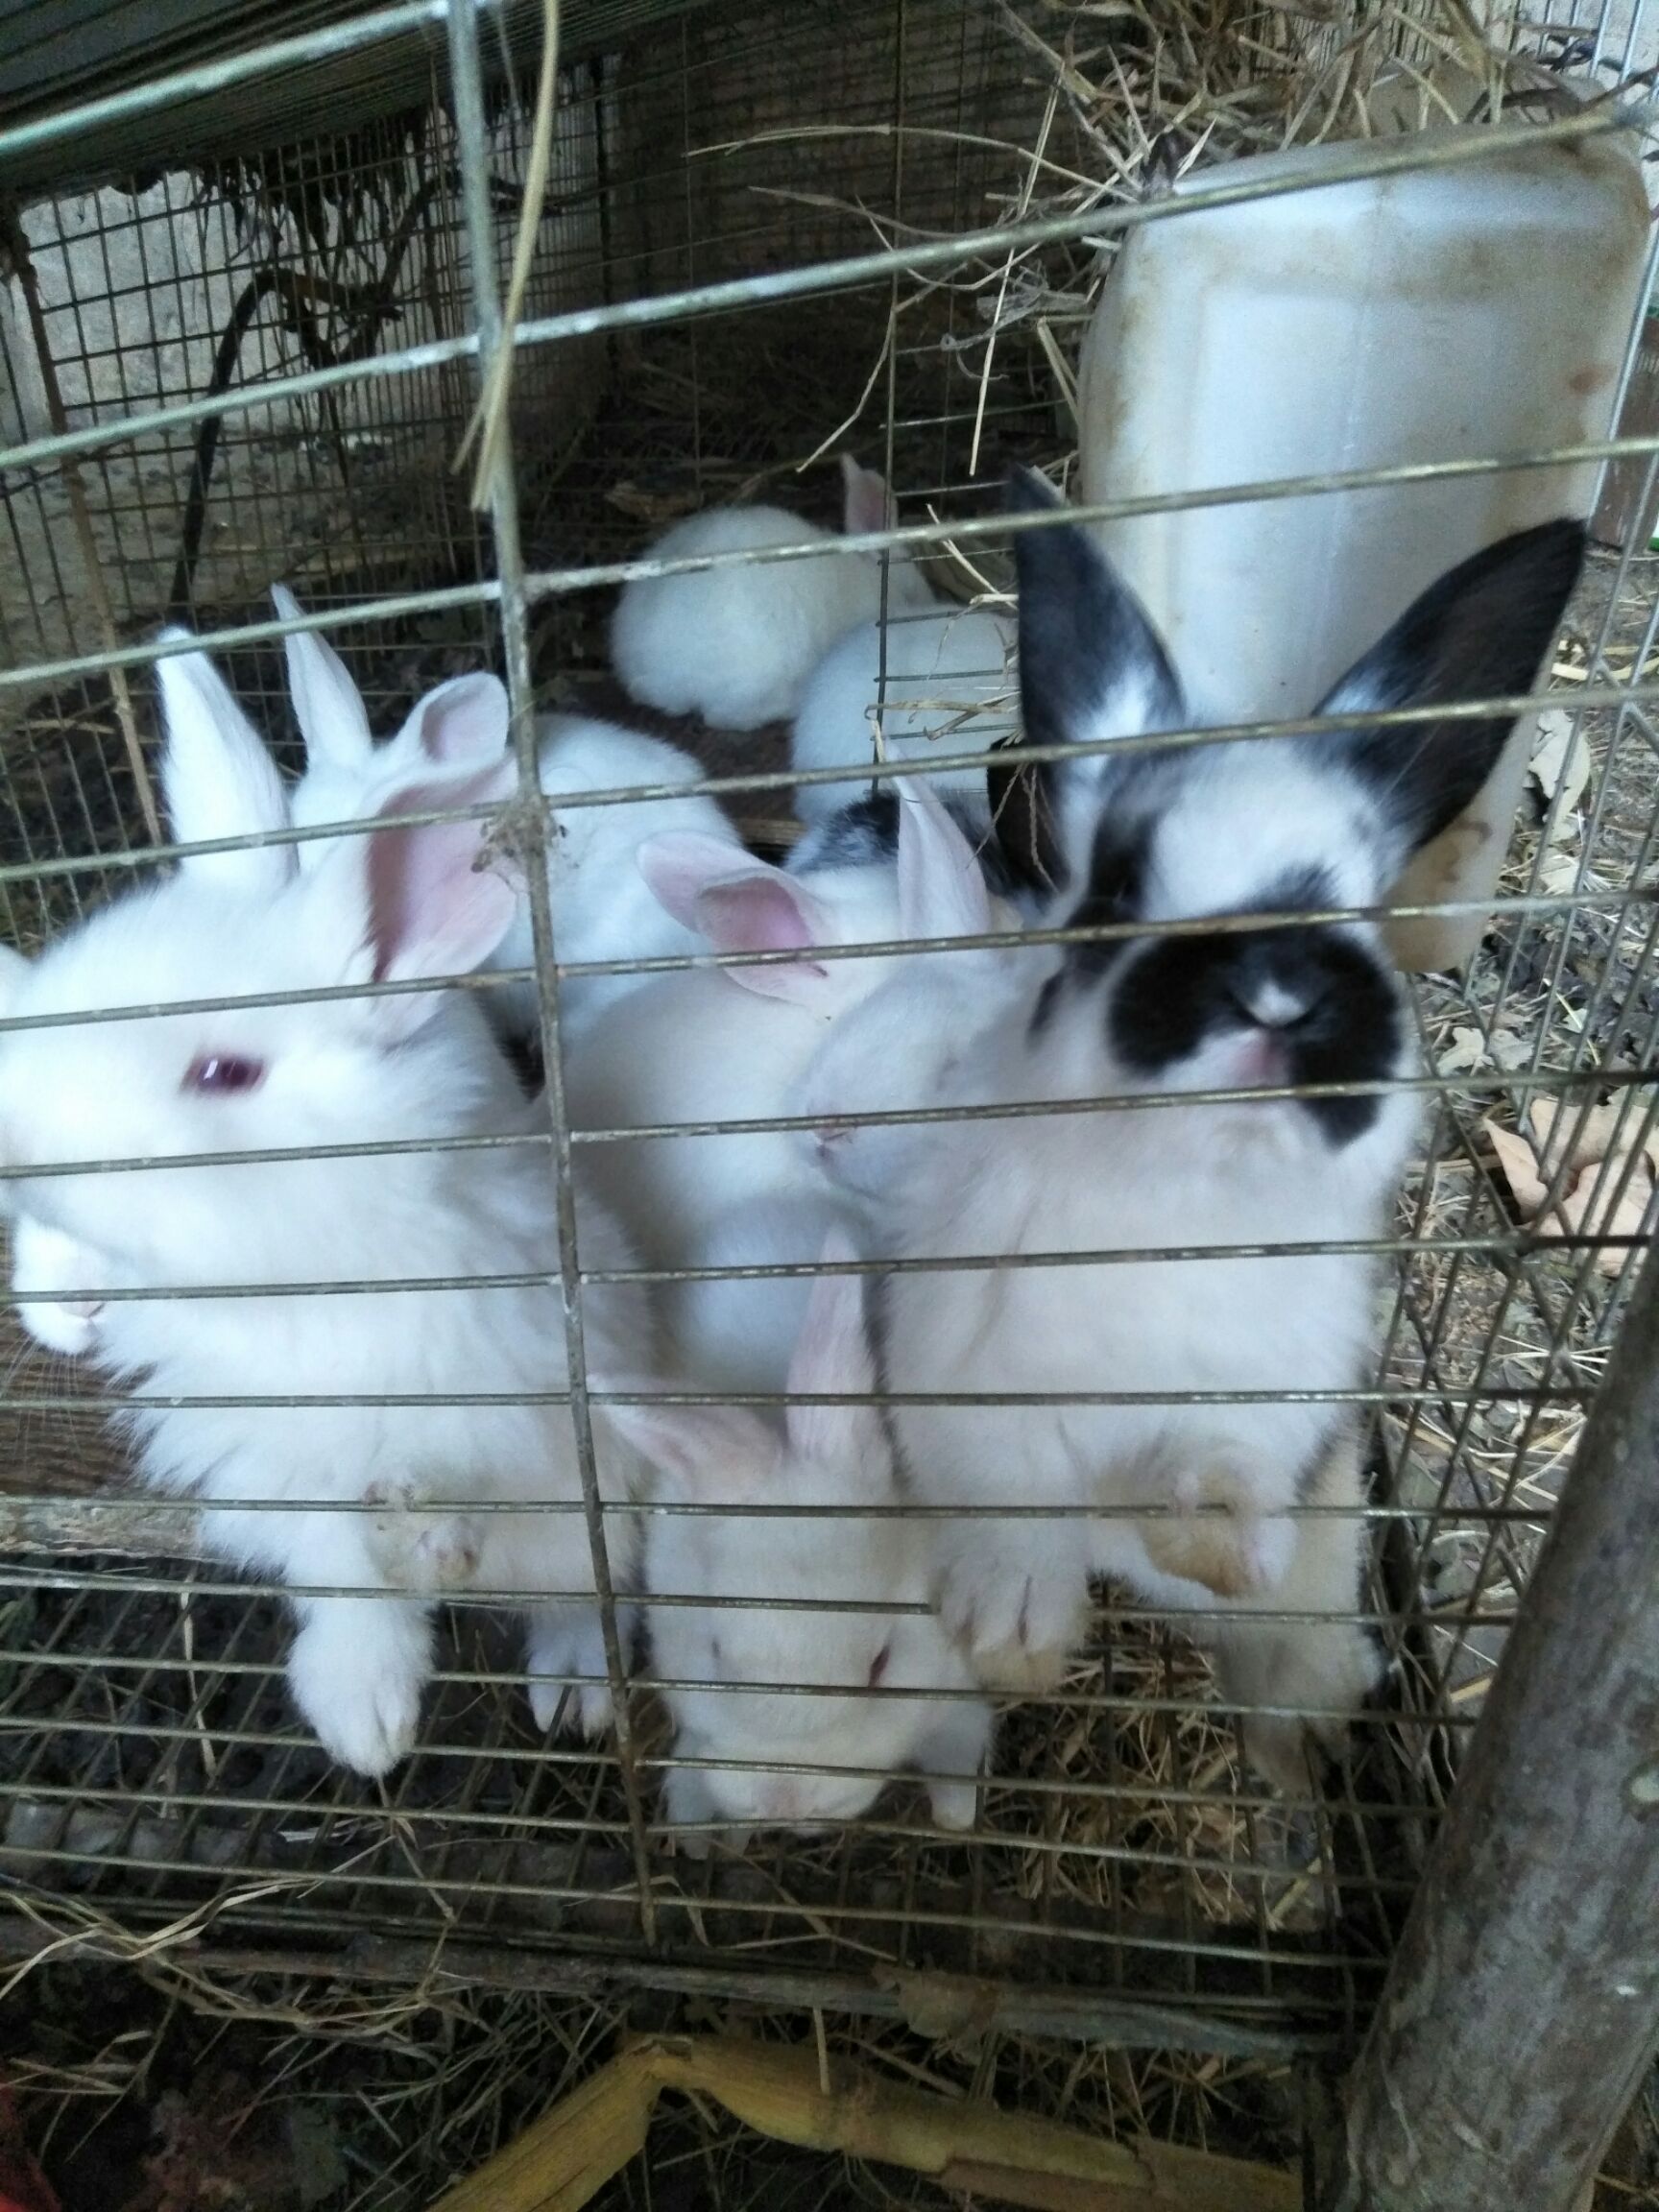 5斤以上 用途:种兔 规格:中型兔